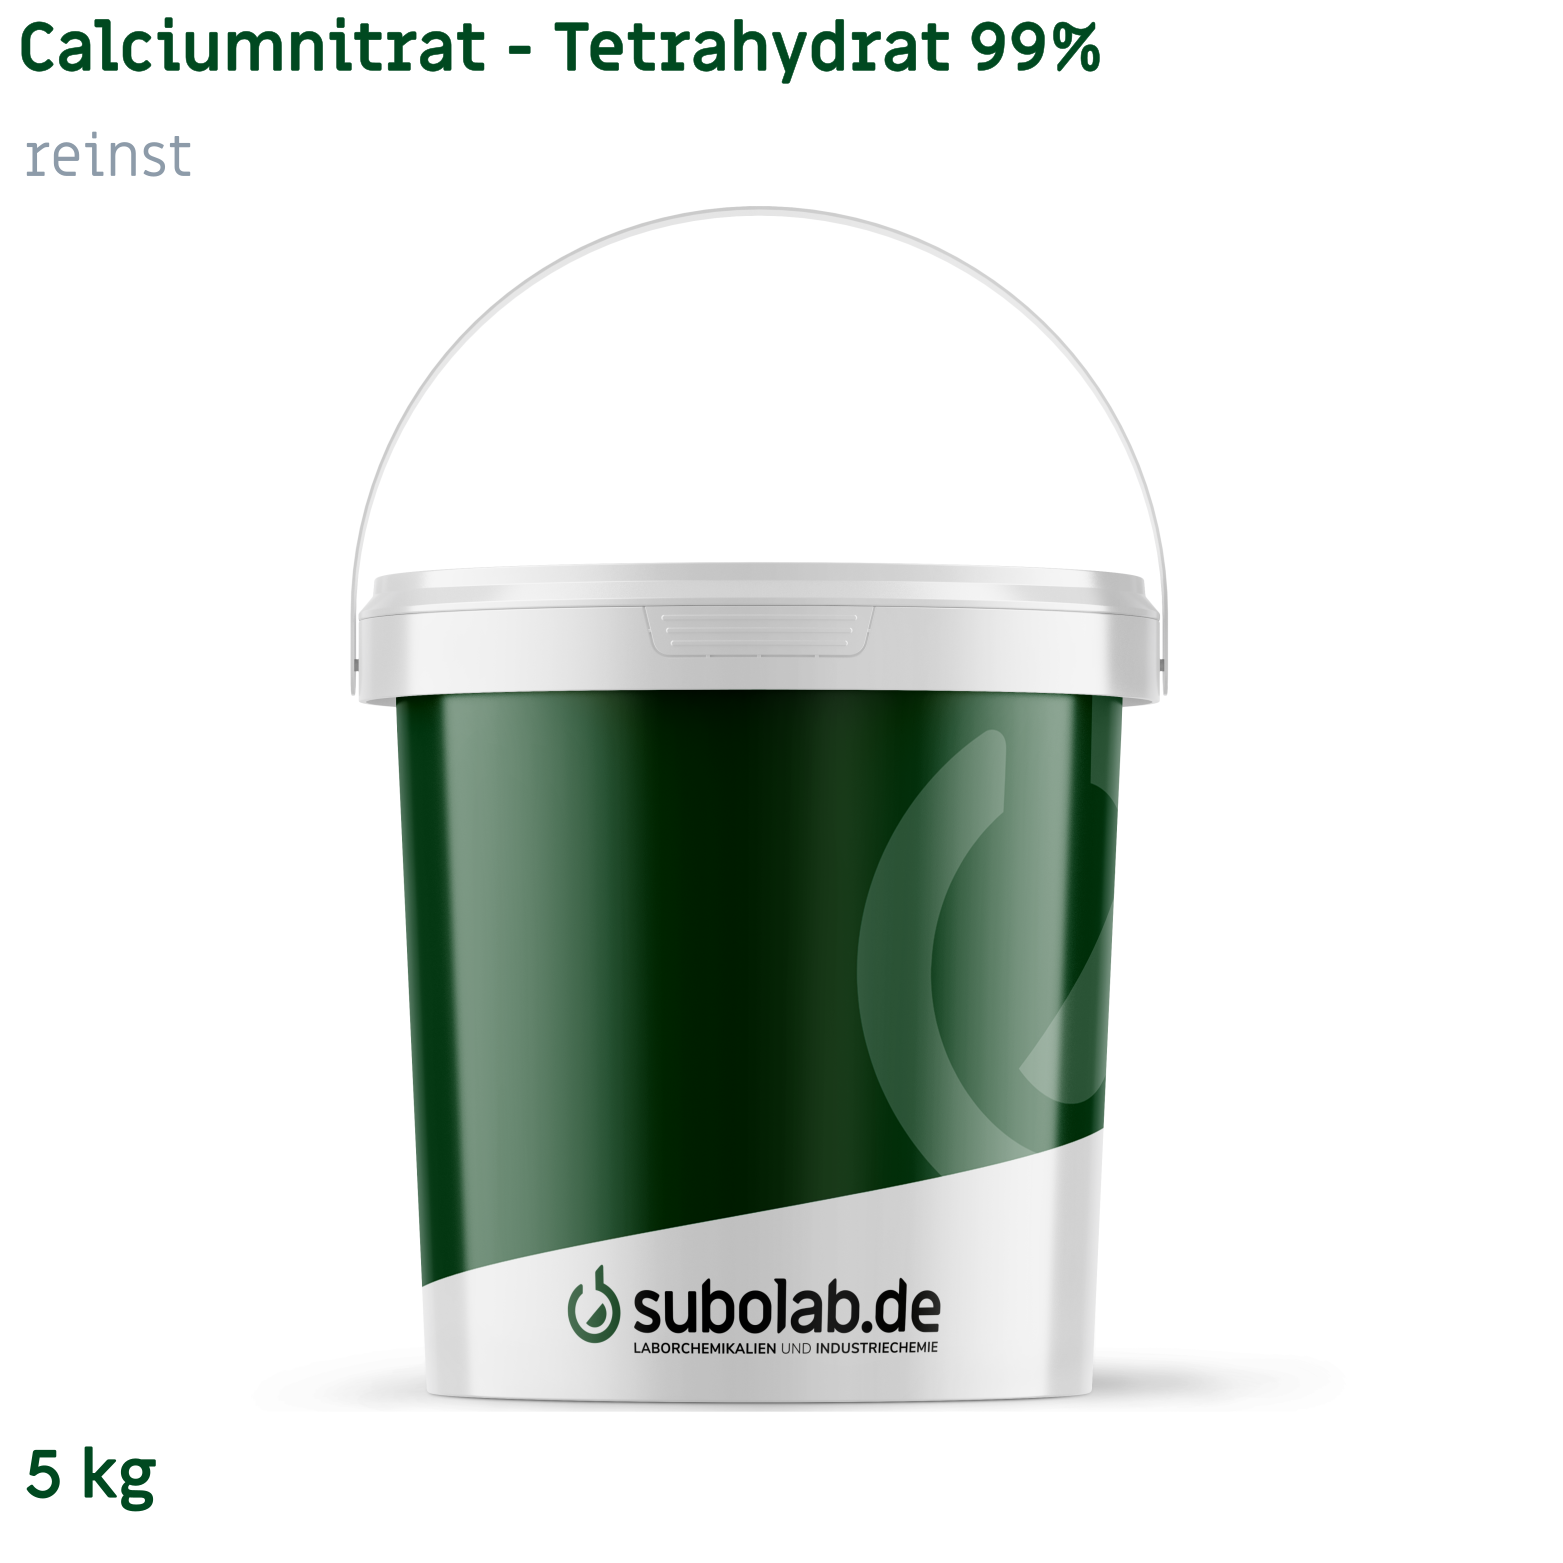 Bild von Calciumnitrat - Tetrahydrat 99% reinst (5 kg)